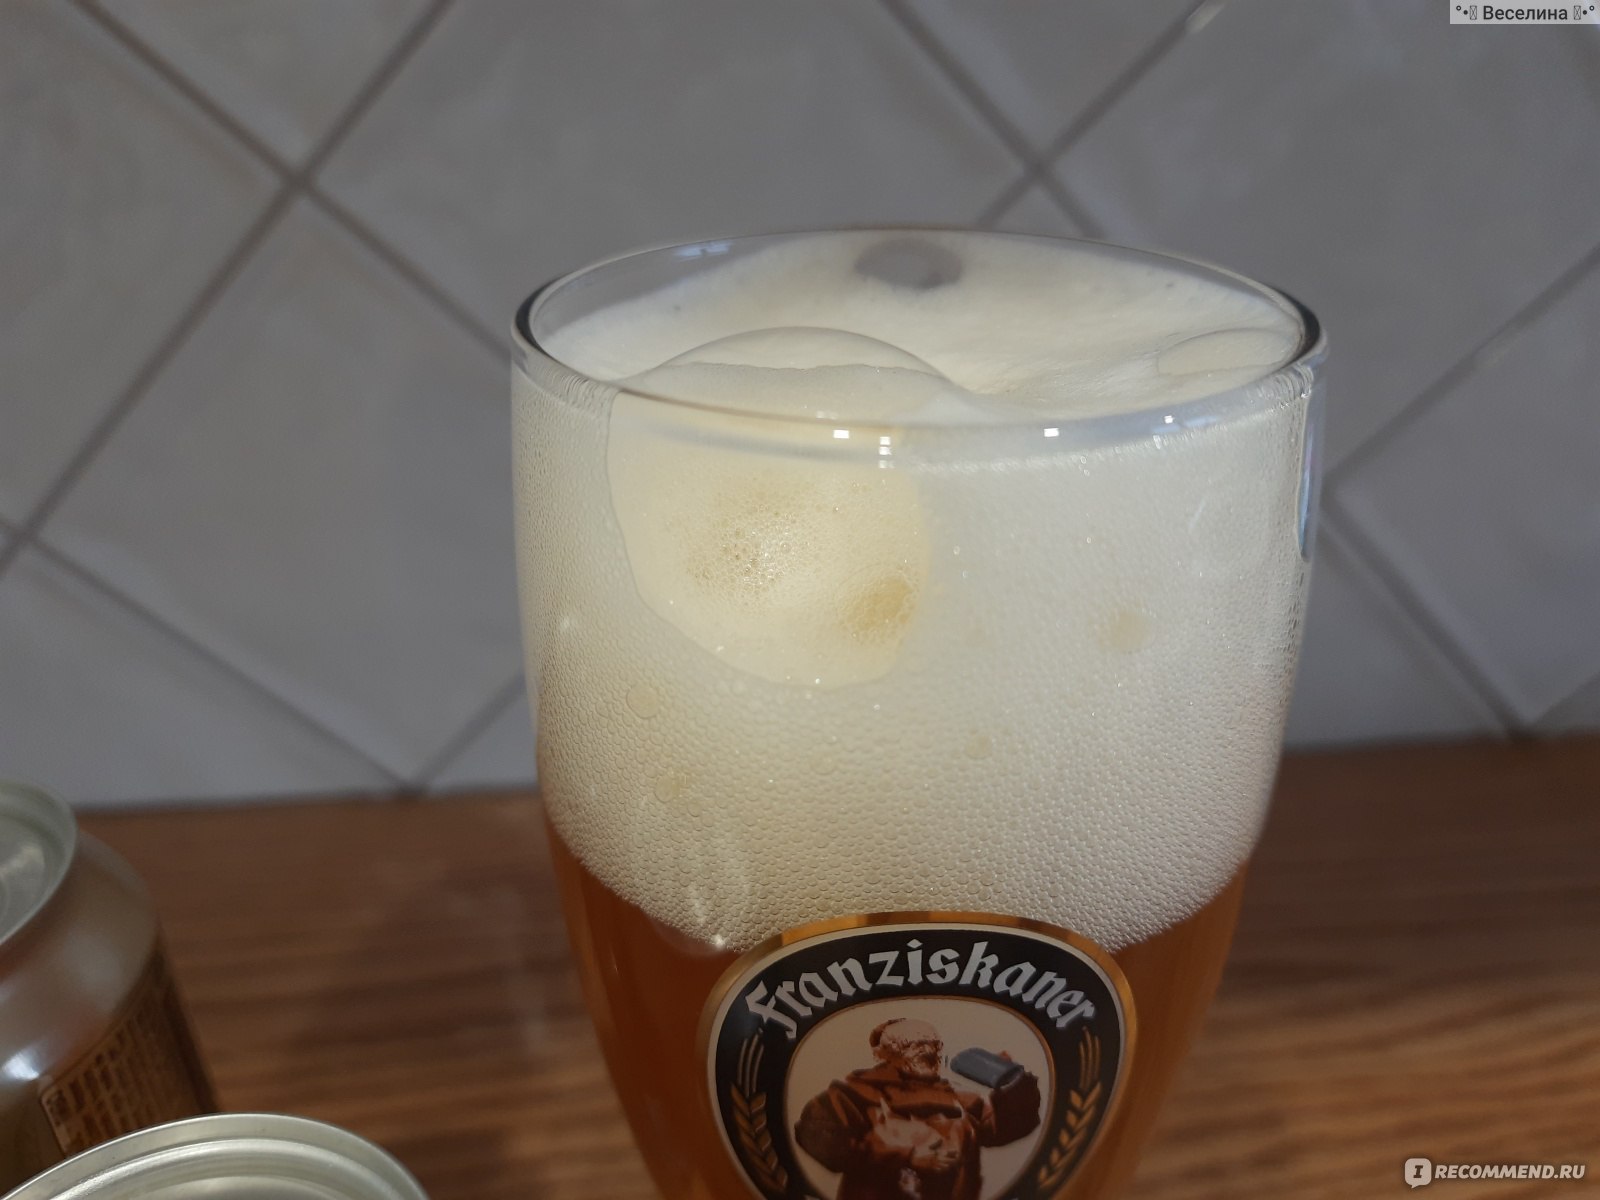 Пиво Franziskaner Weissbier фото